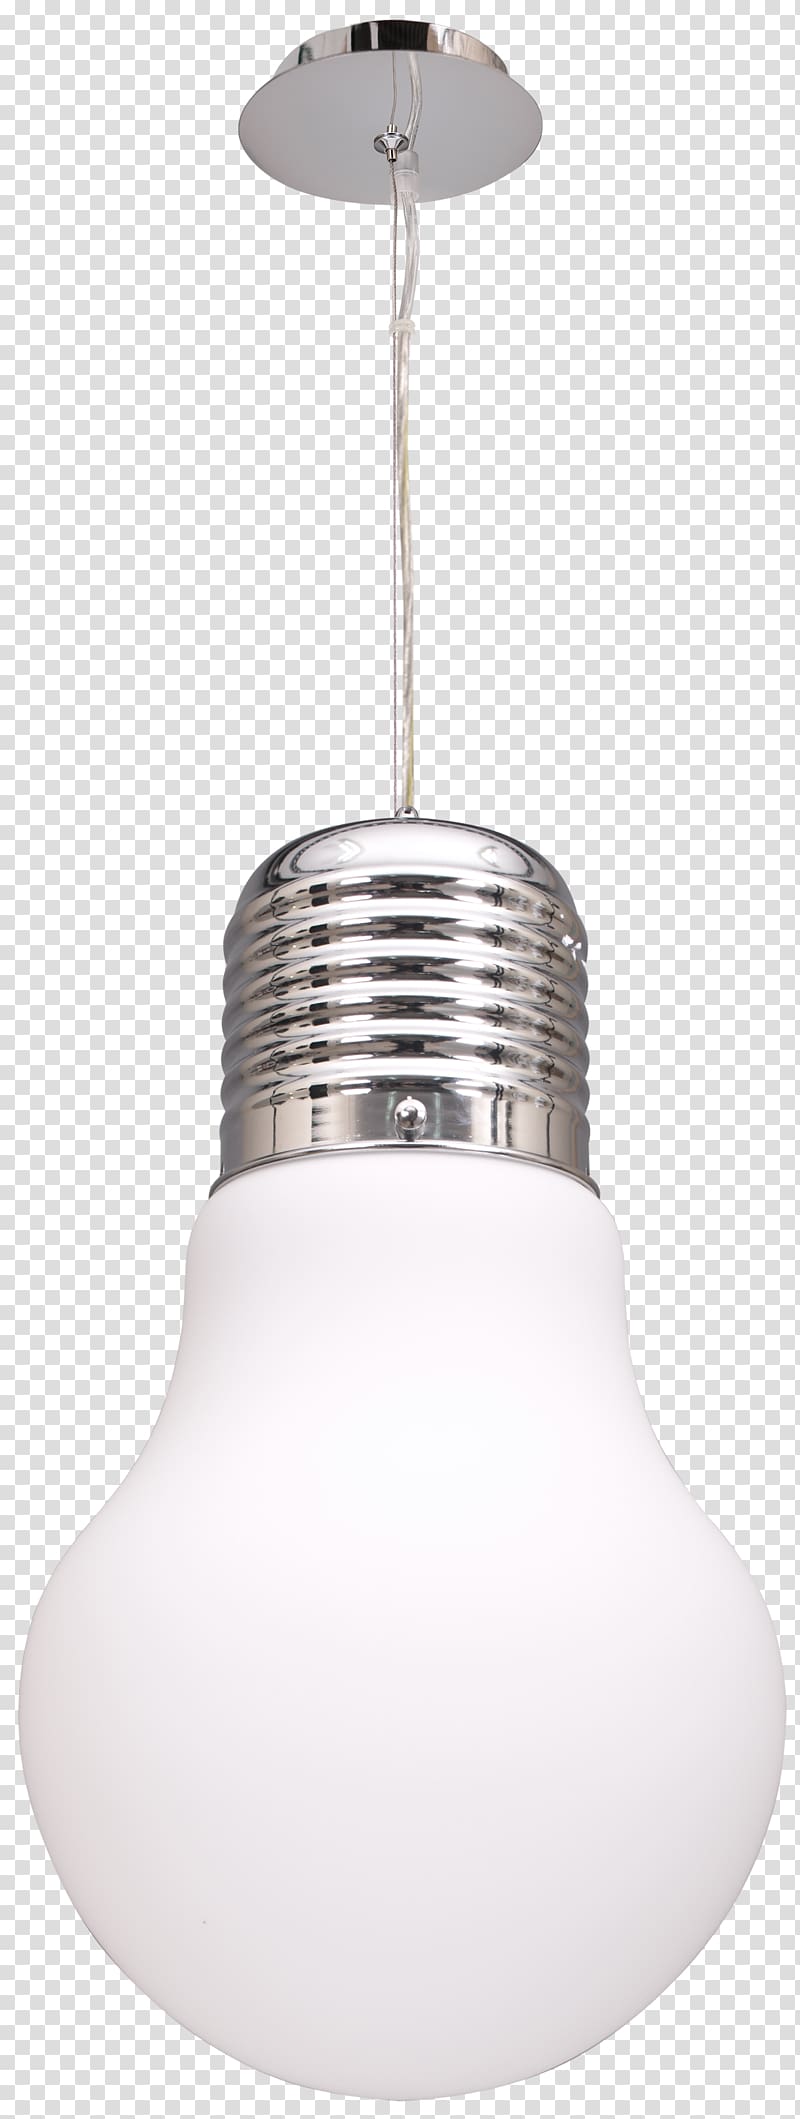 Incandescent light bulb Lamp Charms & Pendants Portalámparas, STYLIST transparent background PNG clipart